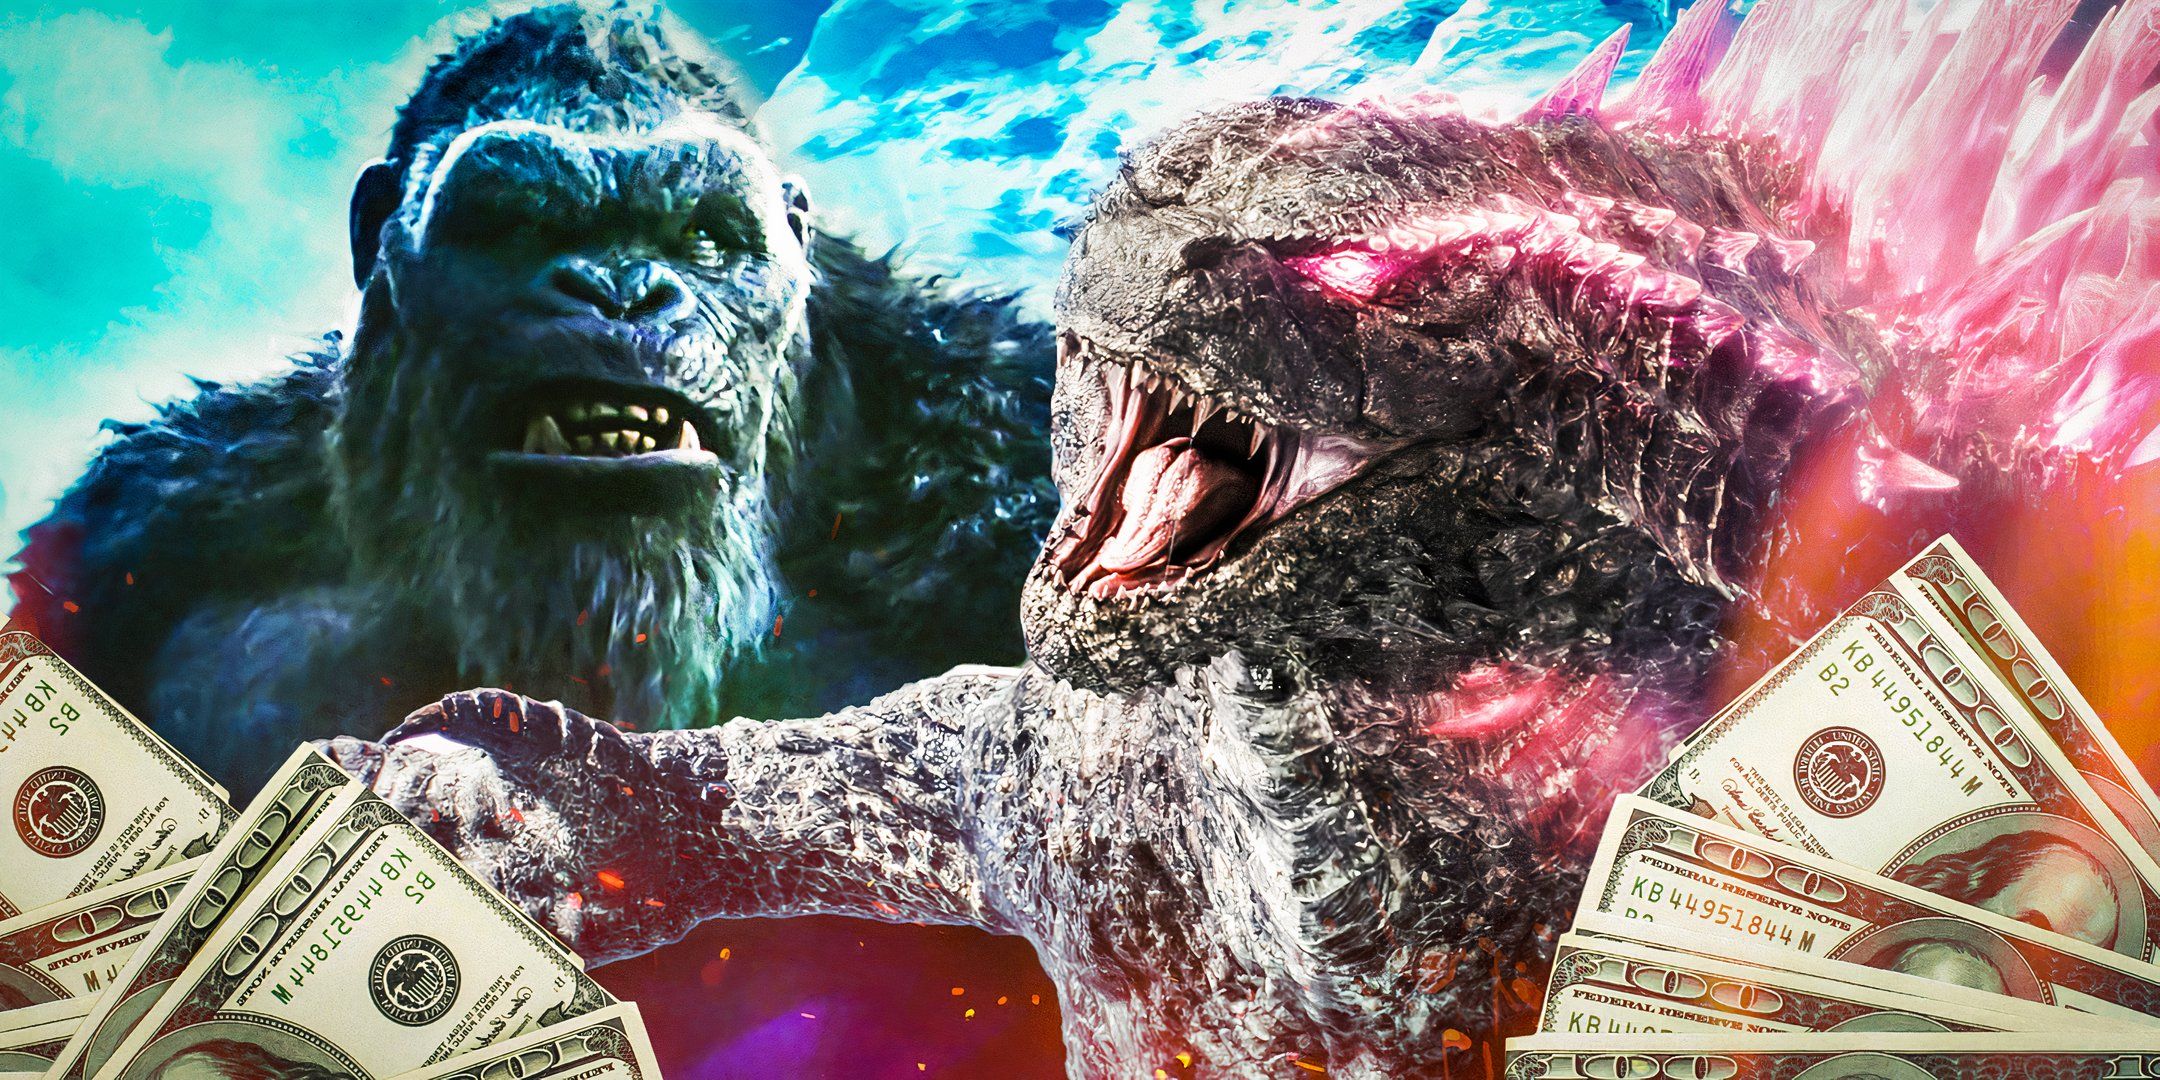 La película Godzilla & Kong, valorada en 570 millones de dólares y con una calificación del 53% en Rotten Tomatoes, ya está disponible en streaming